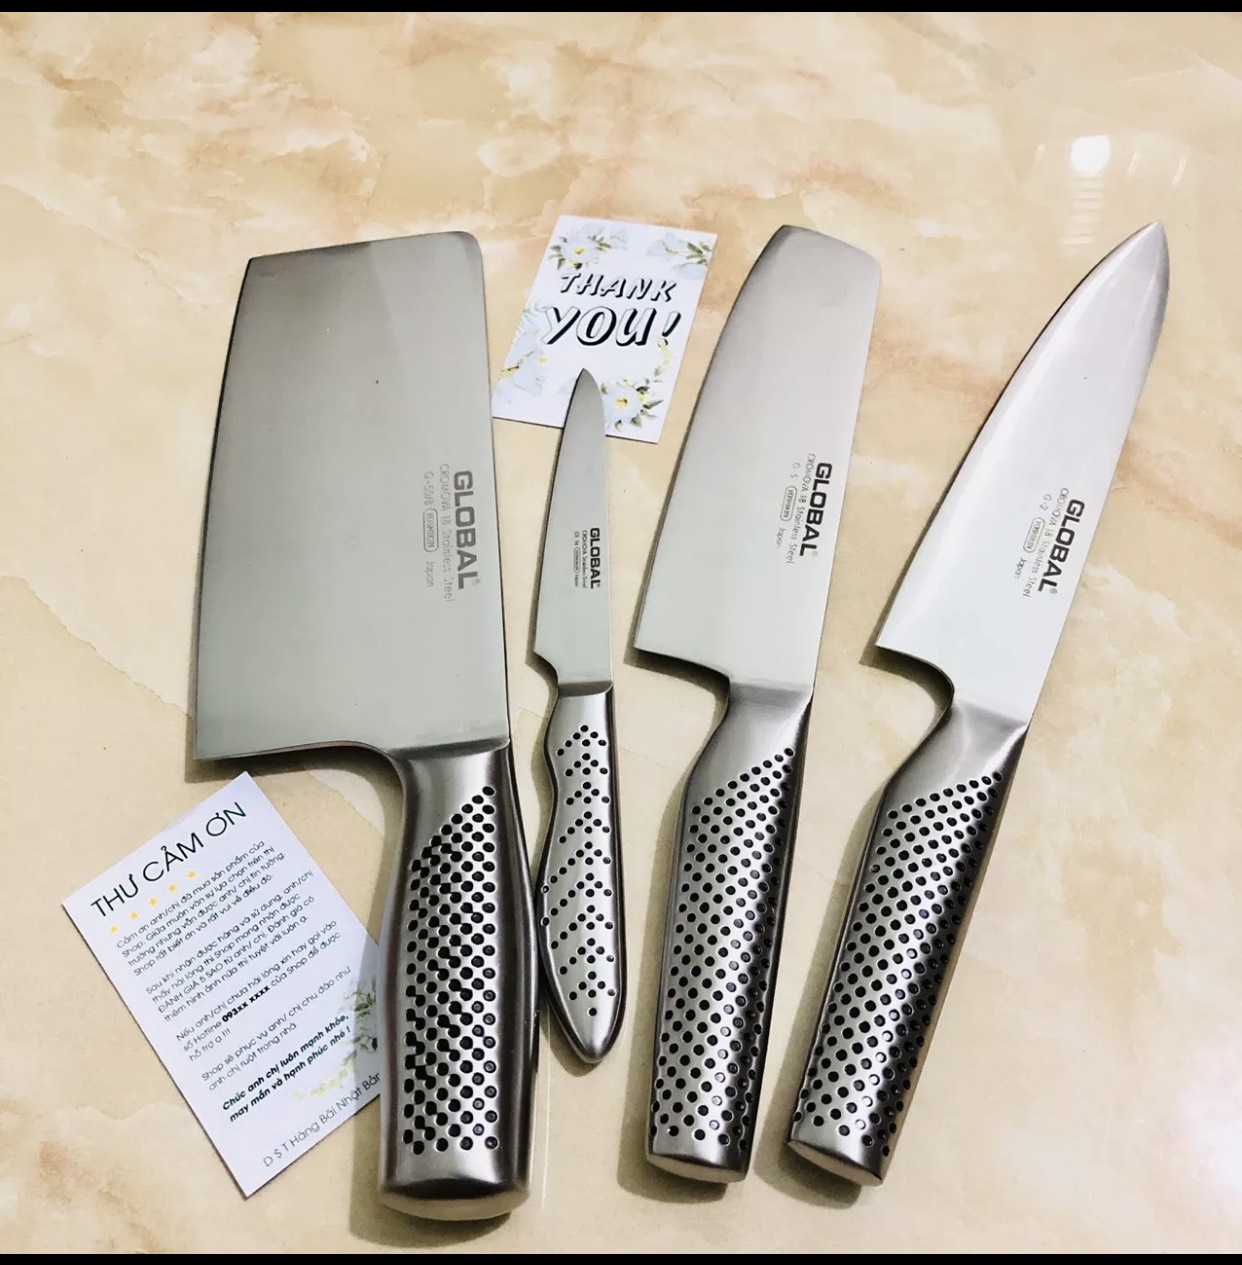 Bộ dao  nấu bếp nhật global 7 món Nhật bản hàng bãi - Bộ dao làm bếp có lưỡi dao được làm từ Thép không gỉ Cromova 18